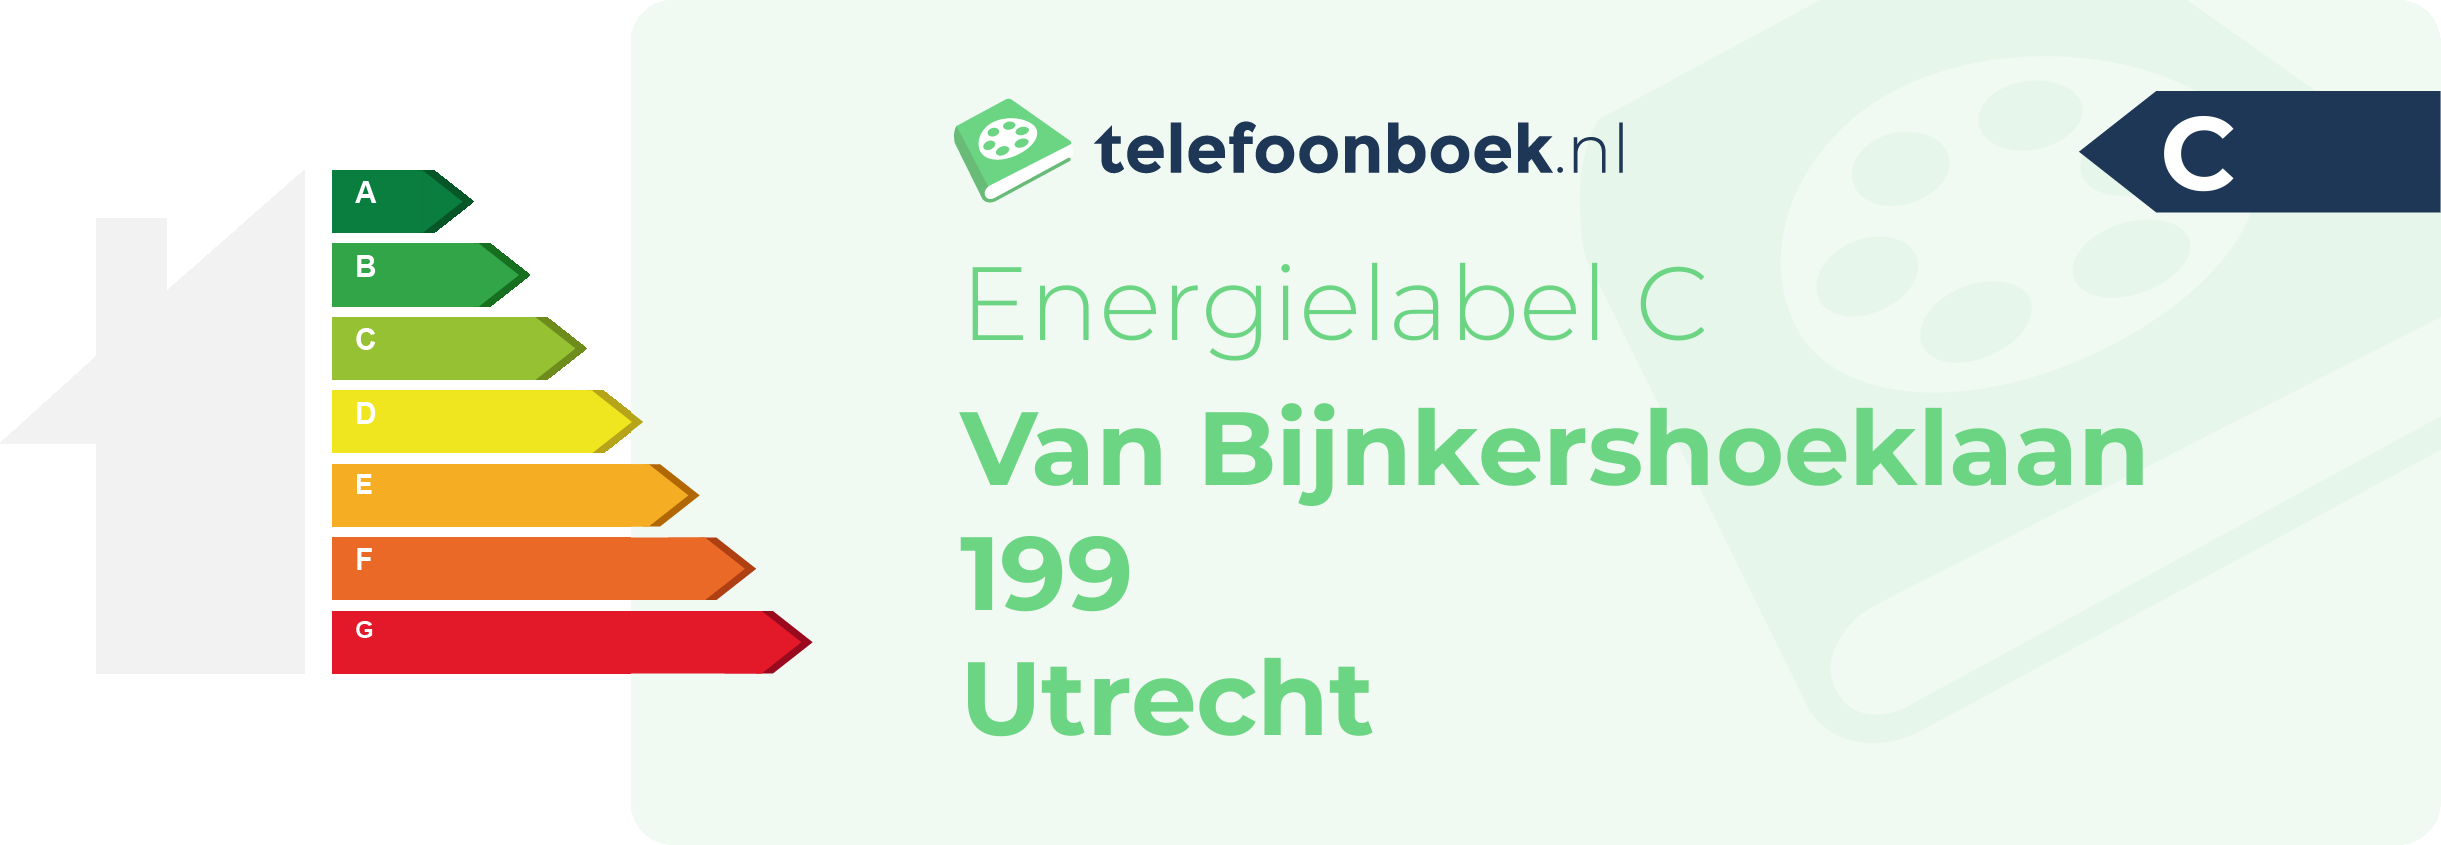 Energielabel Van Bijnkershoeklaan 199 Utrecht